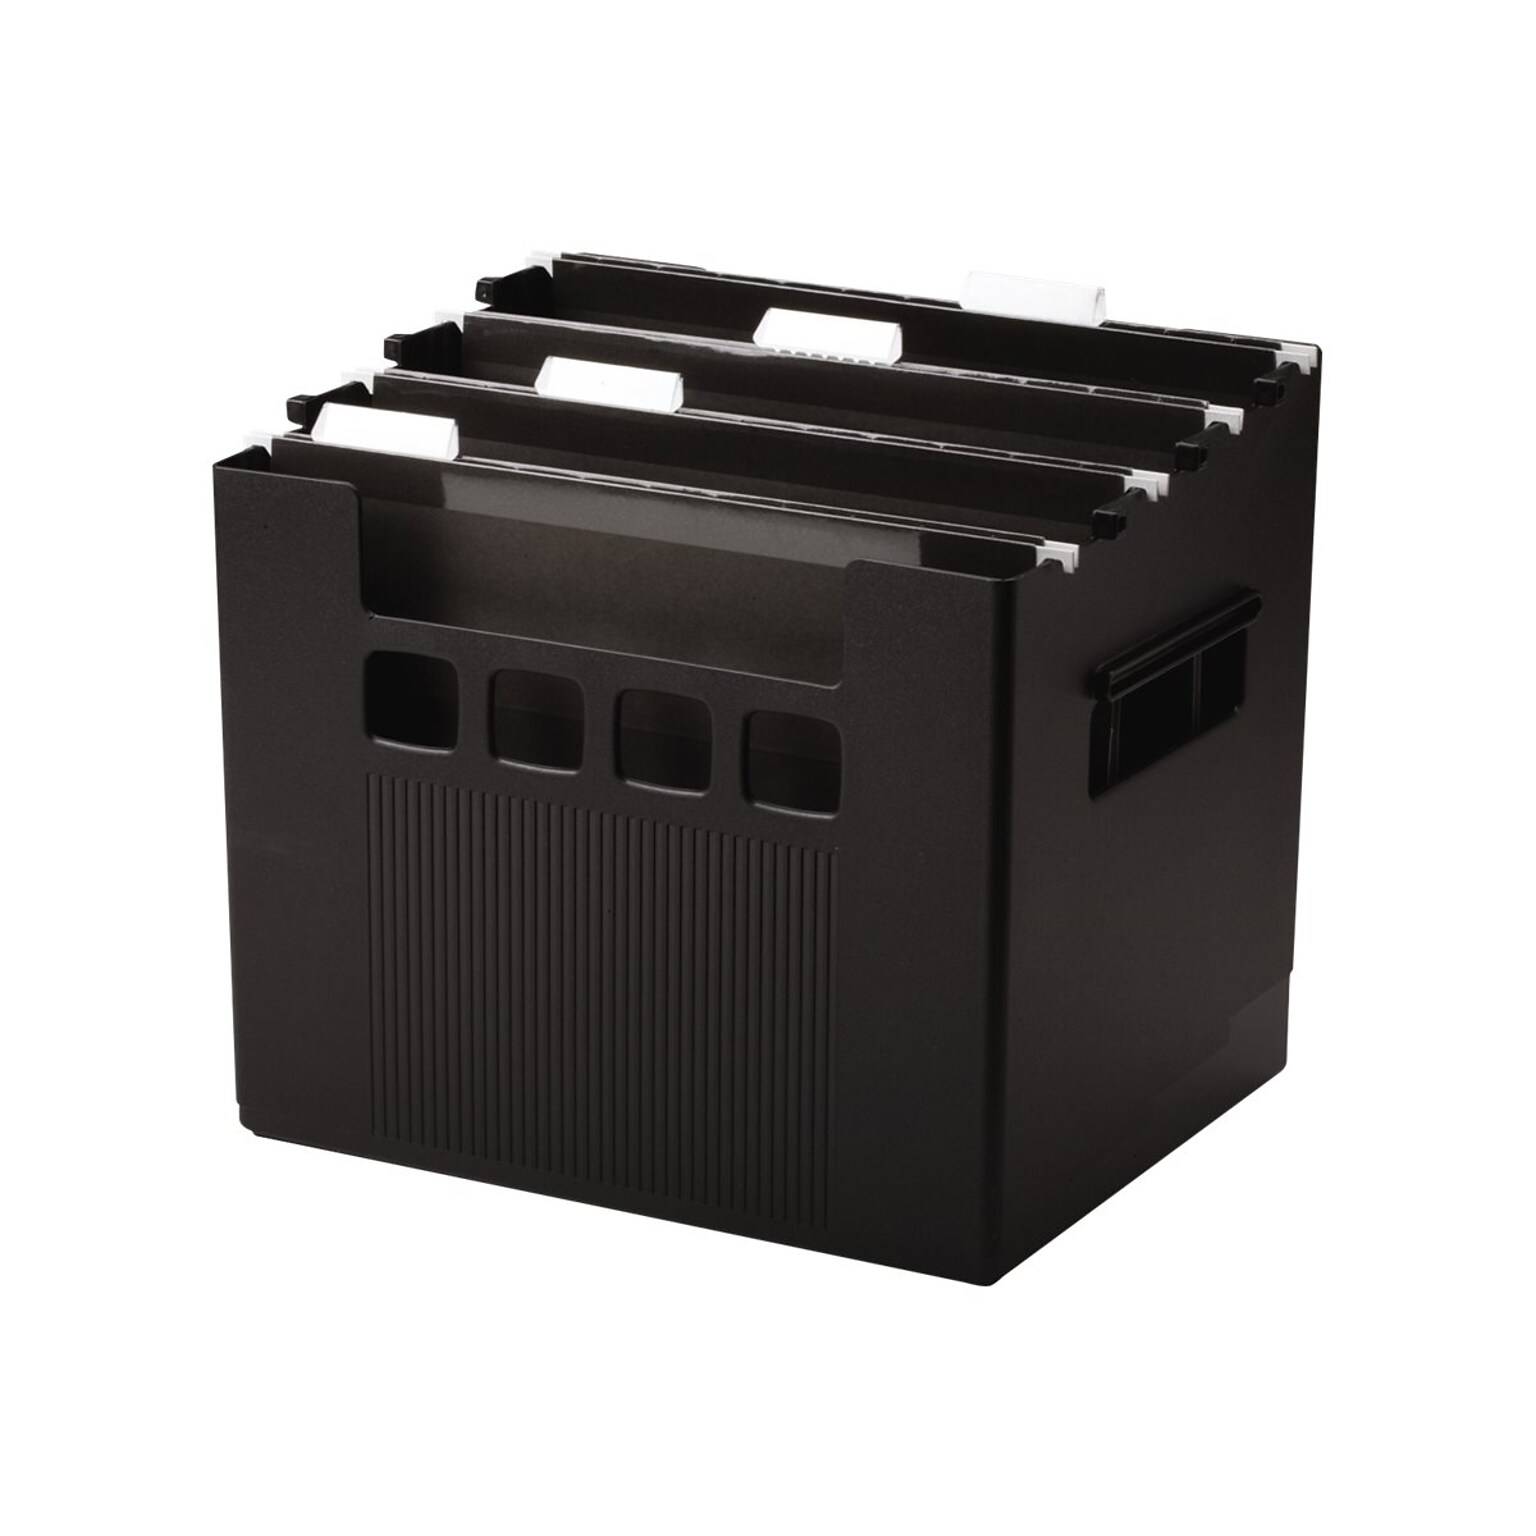 DecoFlex Large Capacity Desktop File Box, Letter Size, Black (PFX 43013)